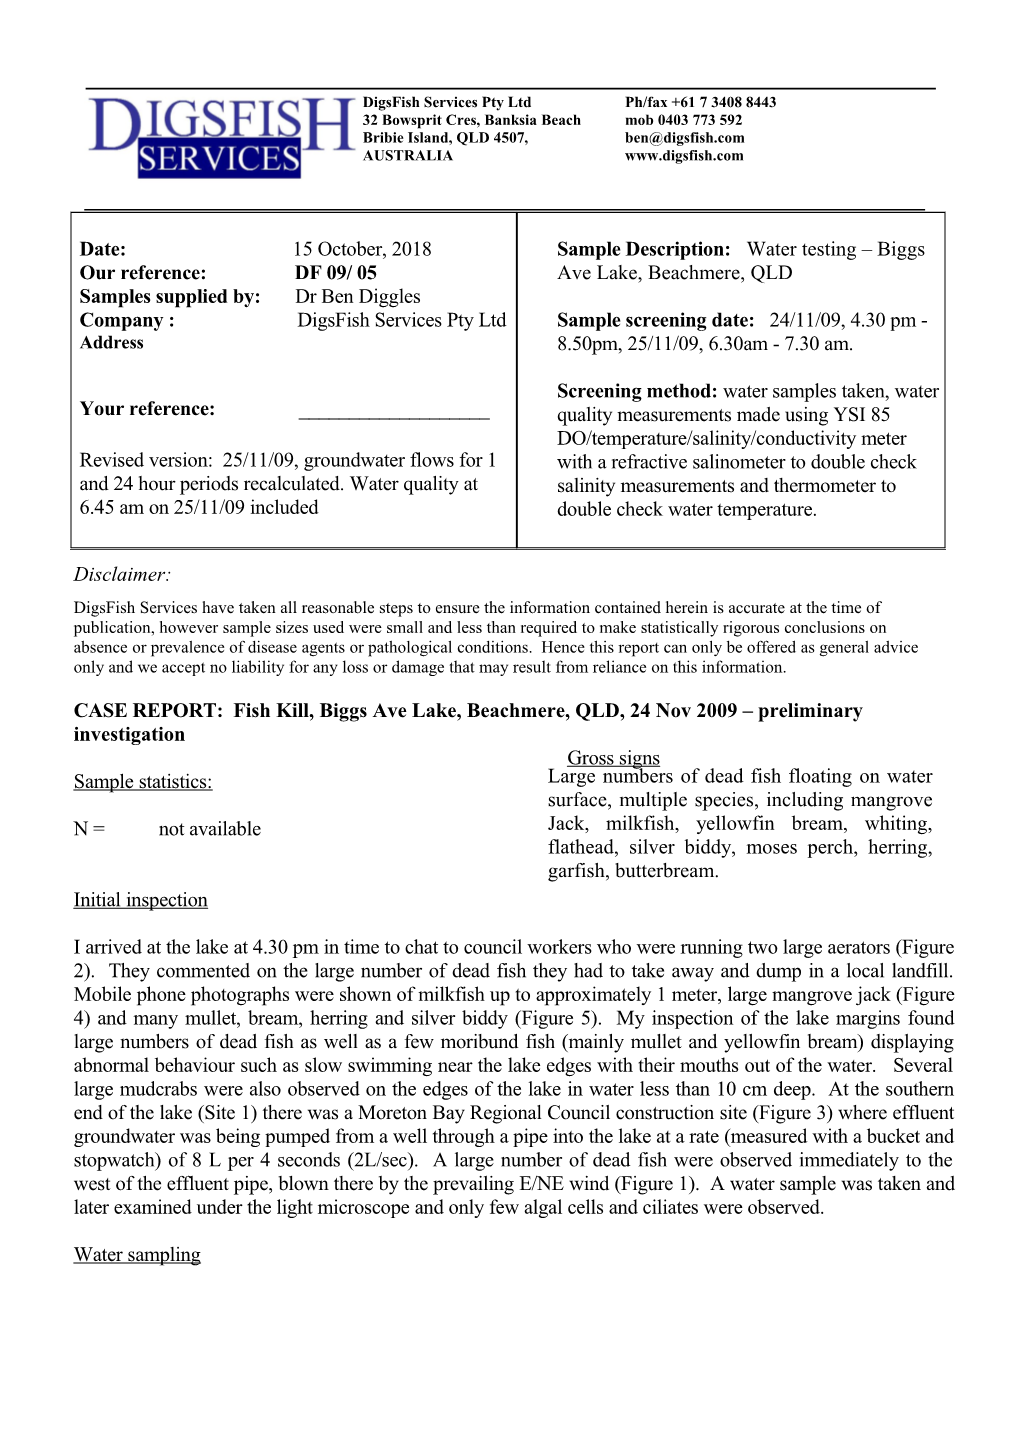 CASE REPORT: Fish Kill, Biggsavelake, Beachmere, QLD, 24 Nov 2009 Preliminary Investigation